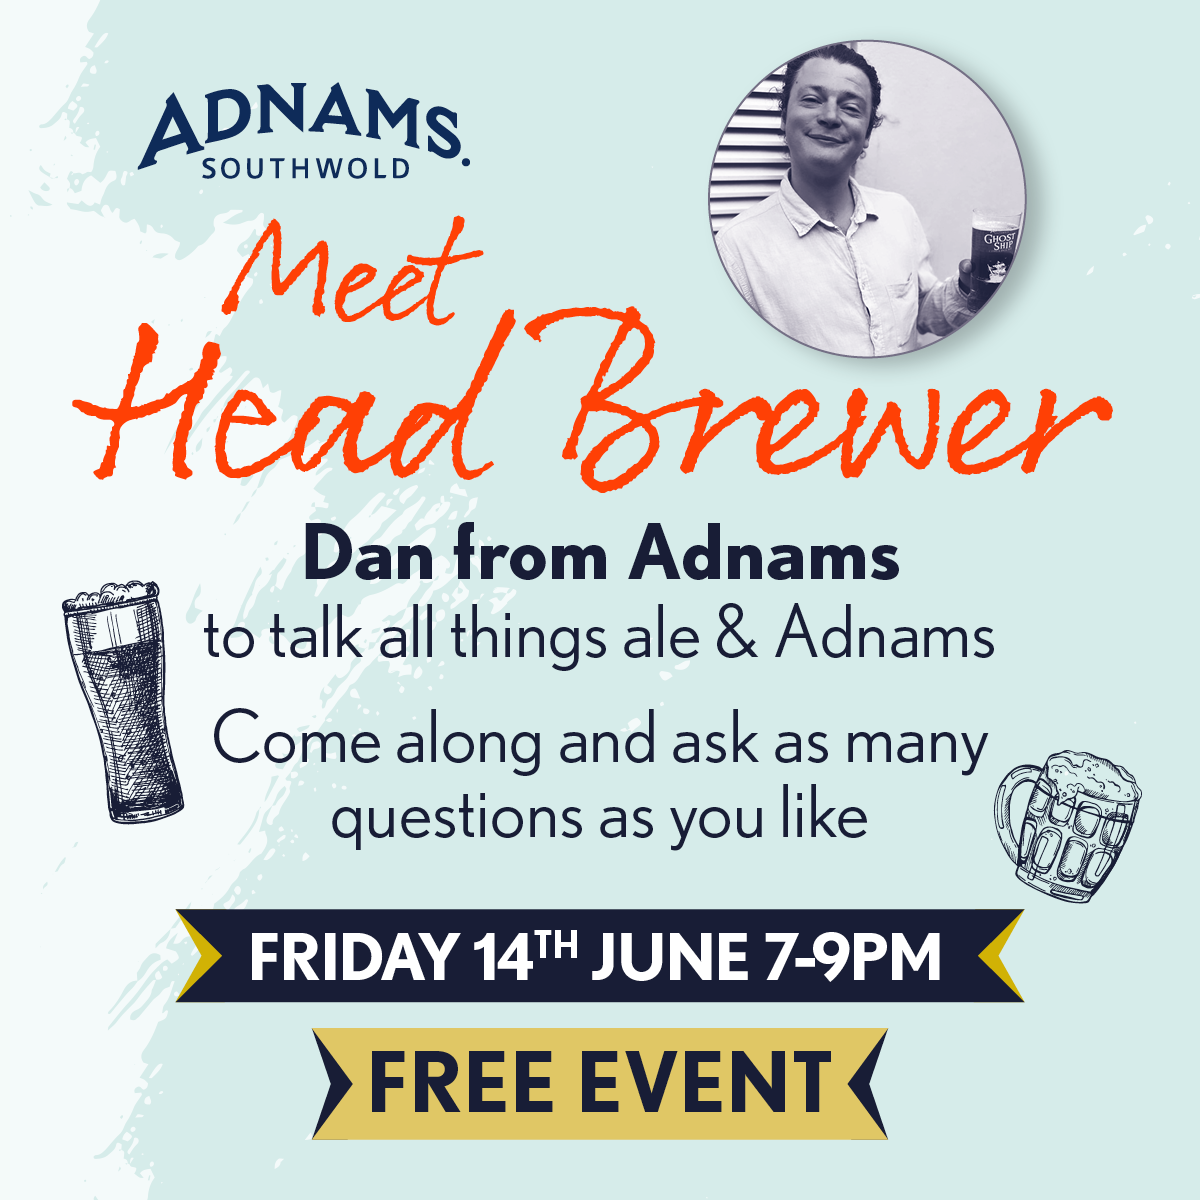 Meet the Brewer Dan from Adnams